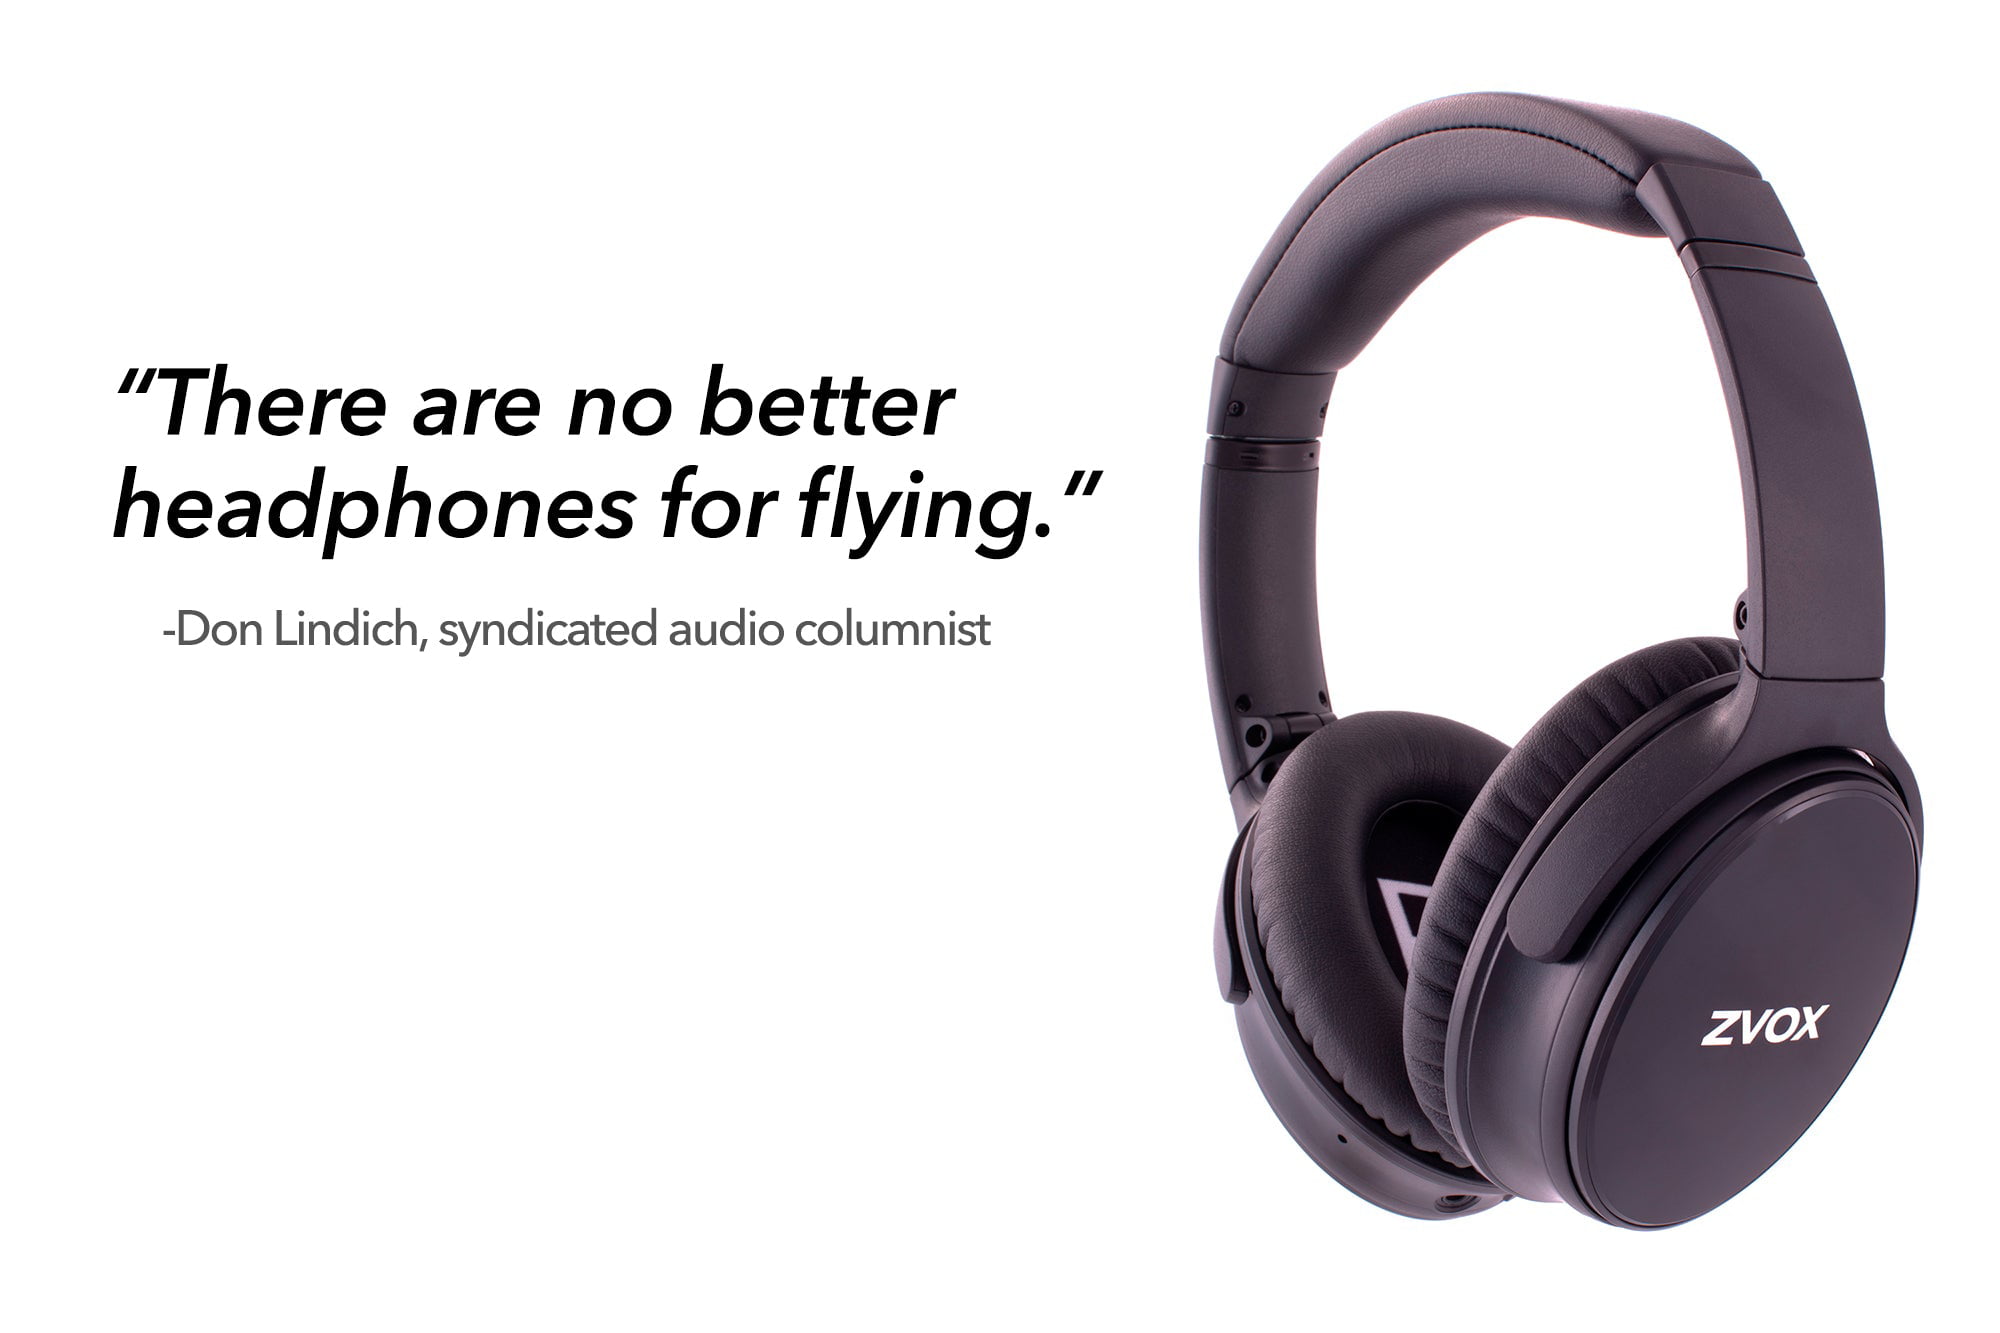 ZVOX AV50 Noise Cancelling Wireless Over Ear Headphones with